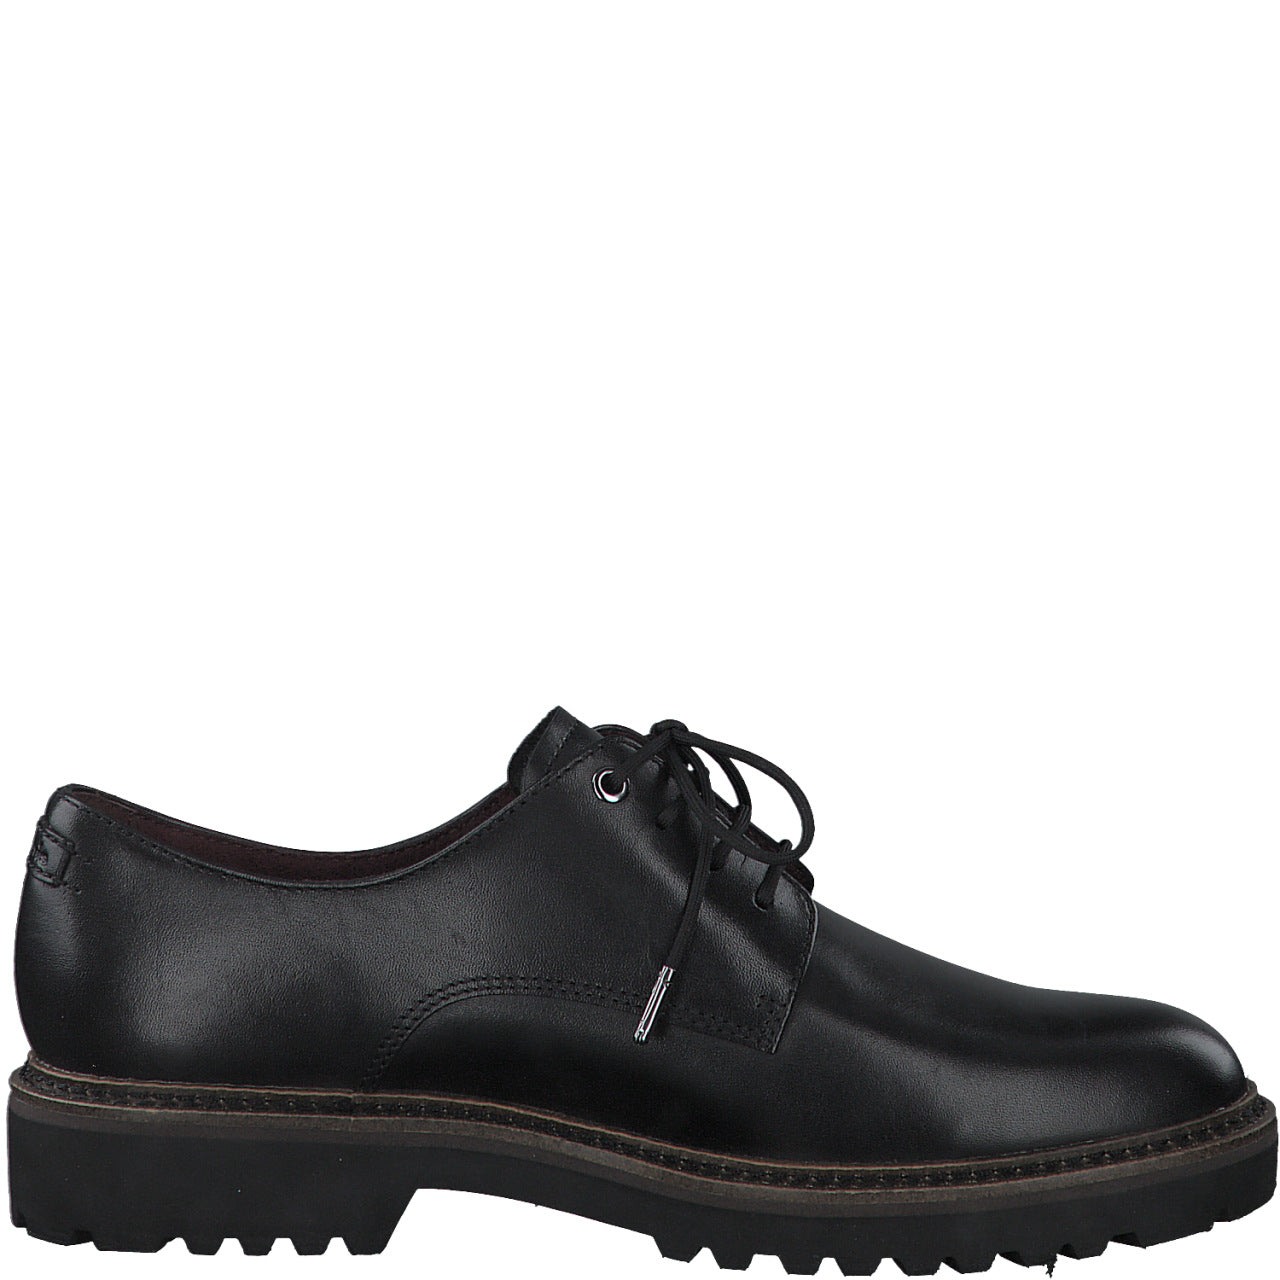 Tamaris 1-1-223723-27 lace up black shoe - Imeldas Shoes Norwich